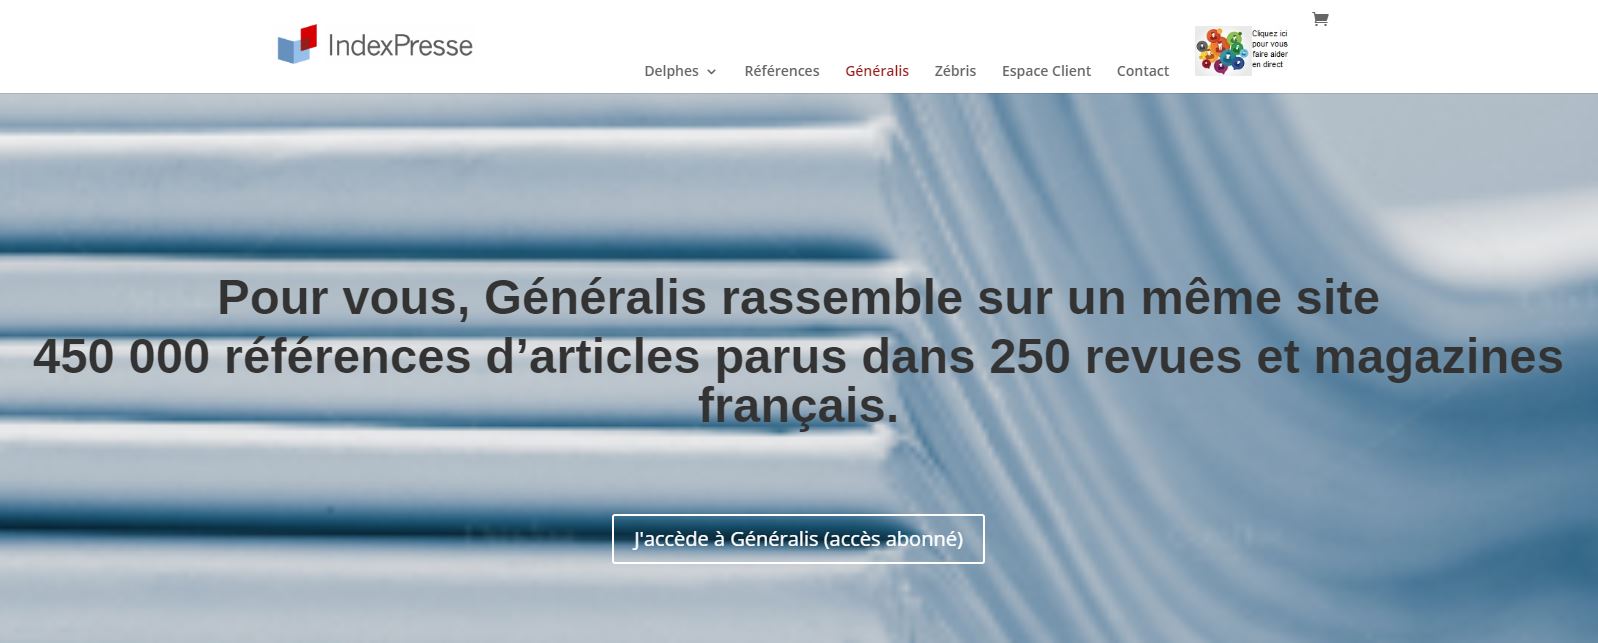 generalis indexpresse homepage